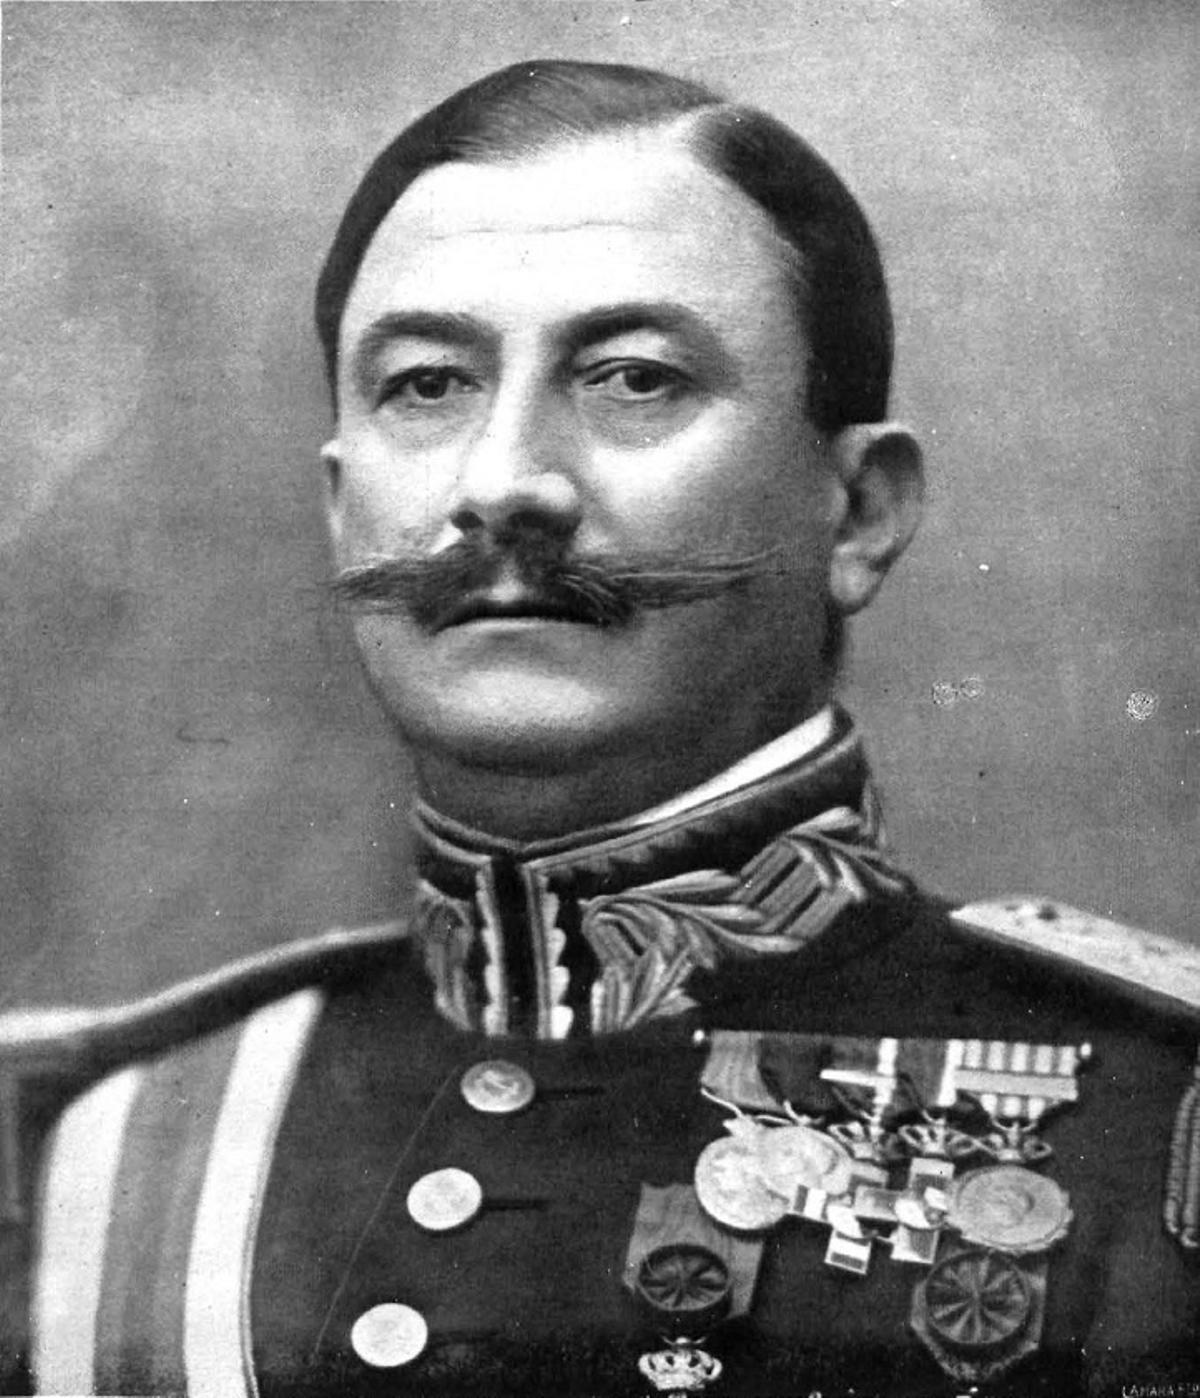 El general Dámaso Berenguer, tío del guardia civil que asesinó a Francisco del Río Falcón